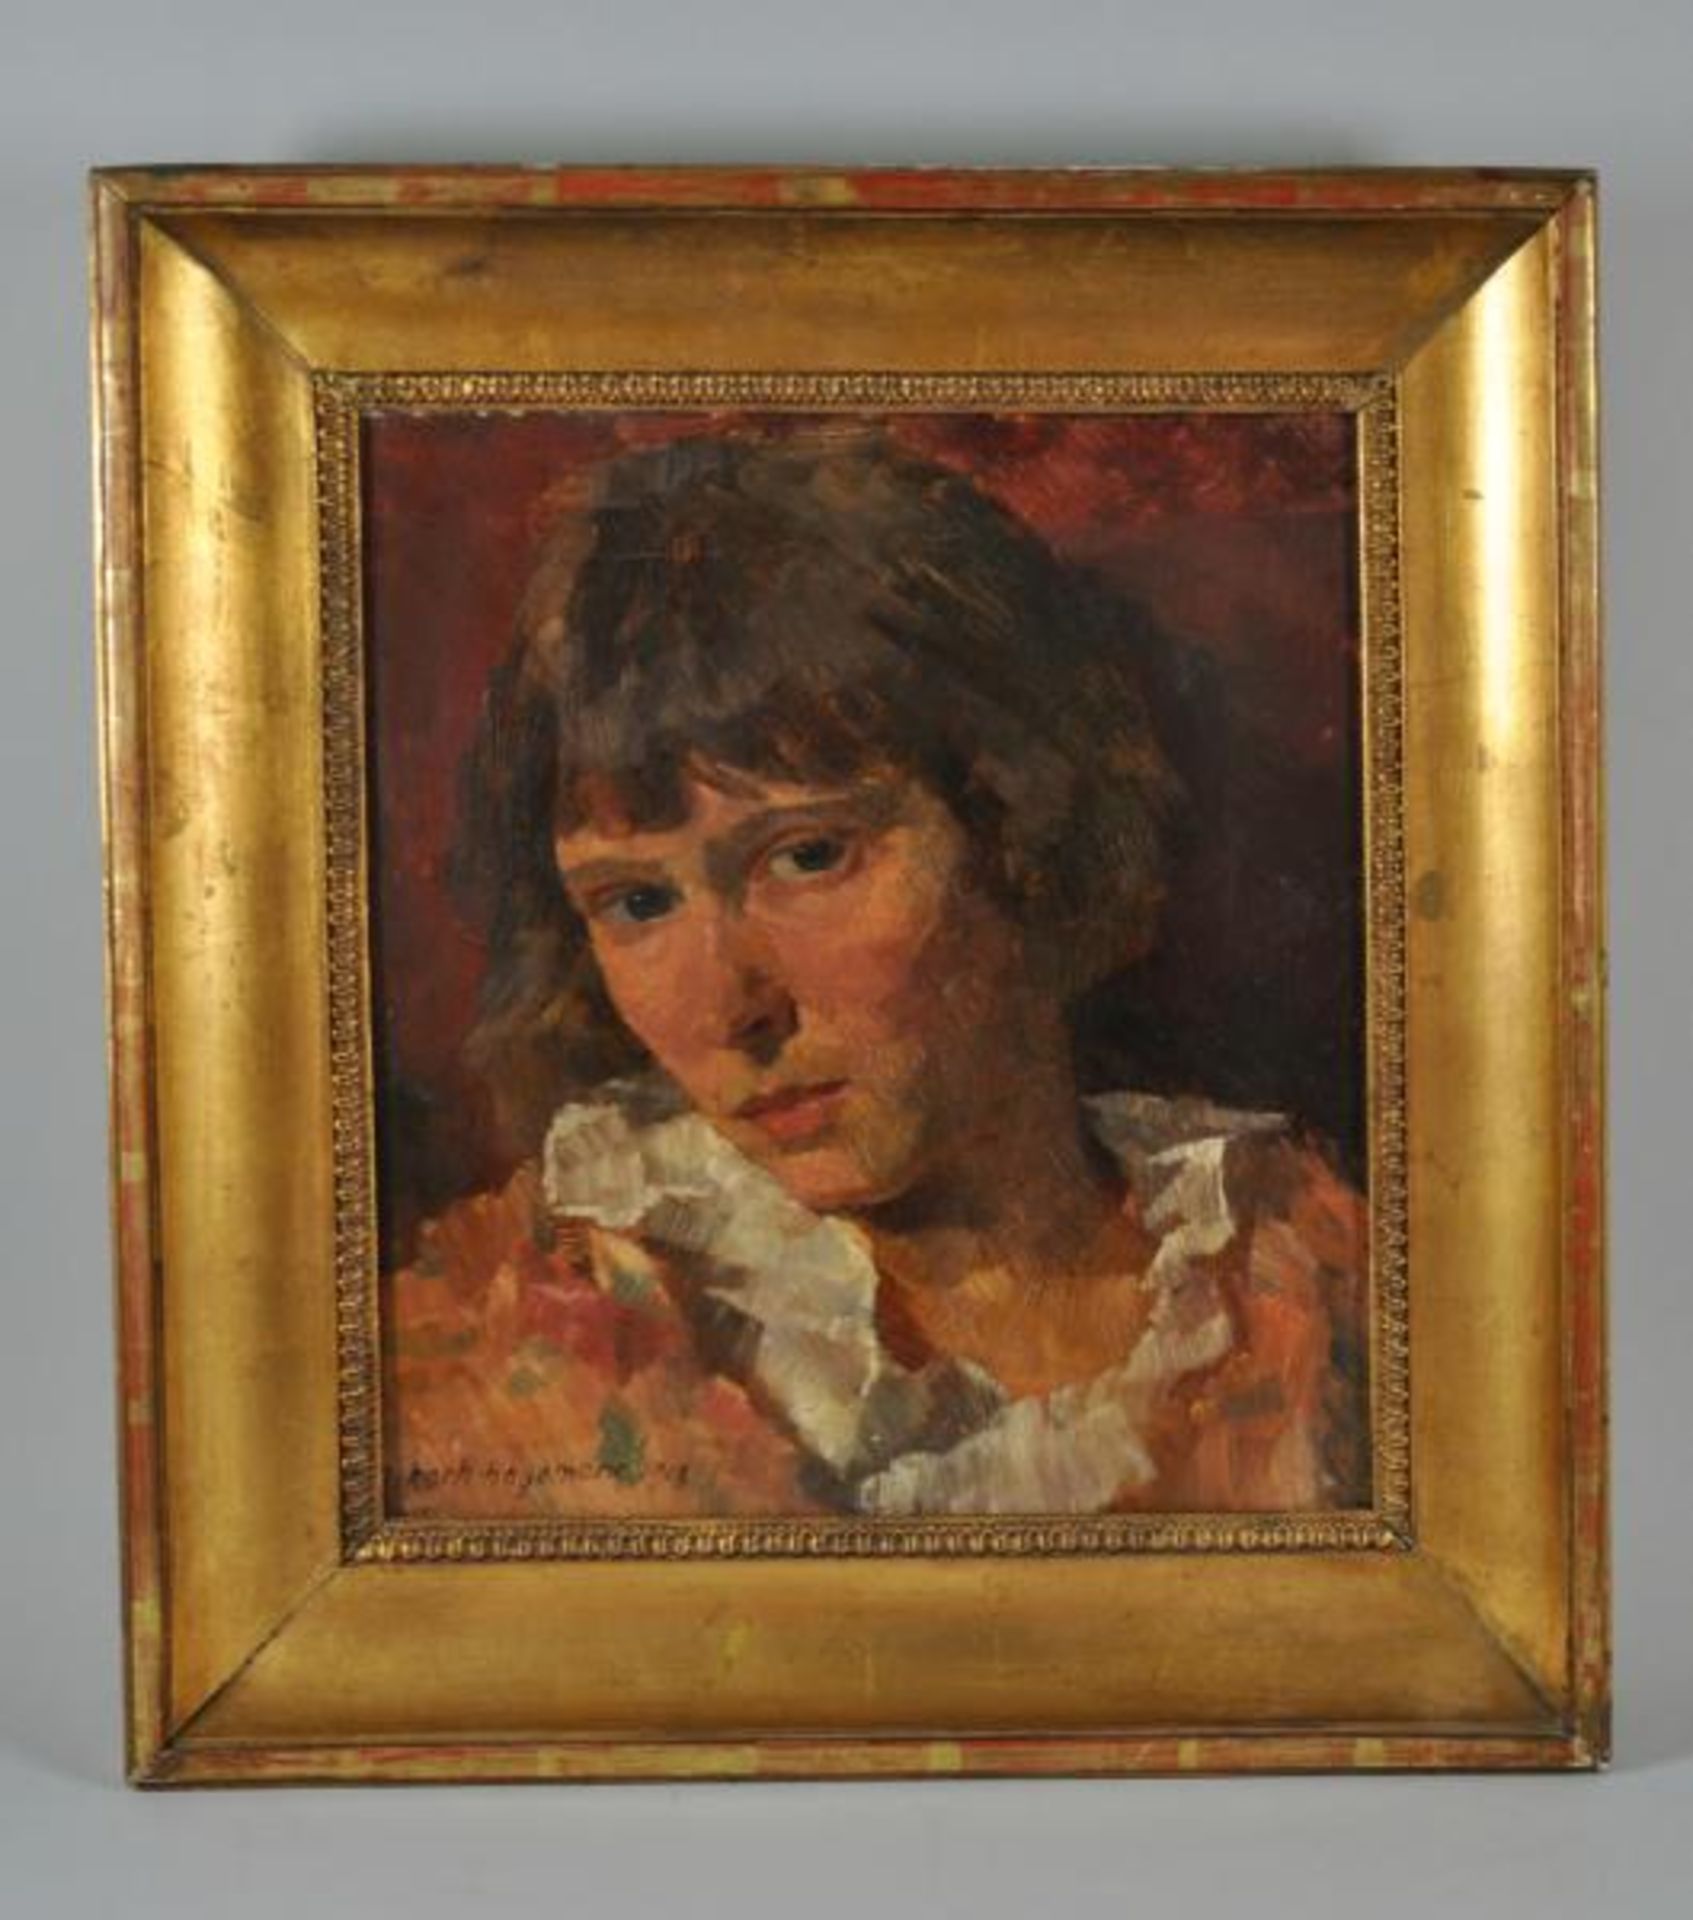 HAGEMANN Oskar (1888 Holoubkov bei Pilsen - 1984 Karlsruhe) "Frauenportrait", junge Frau mit